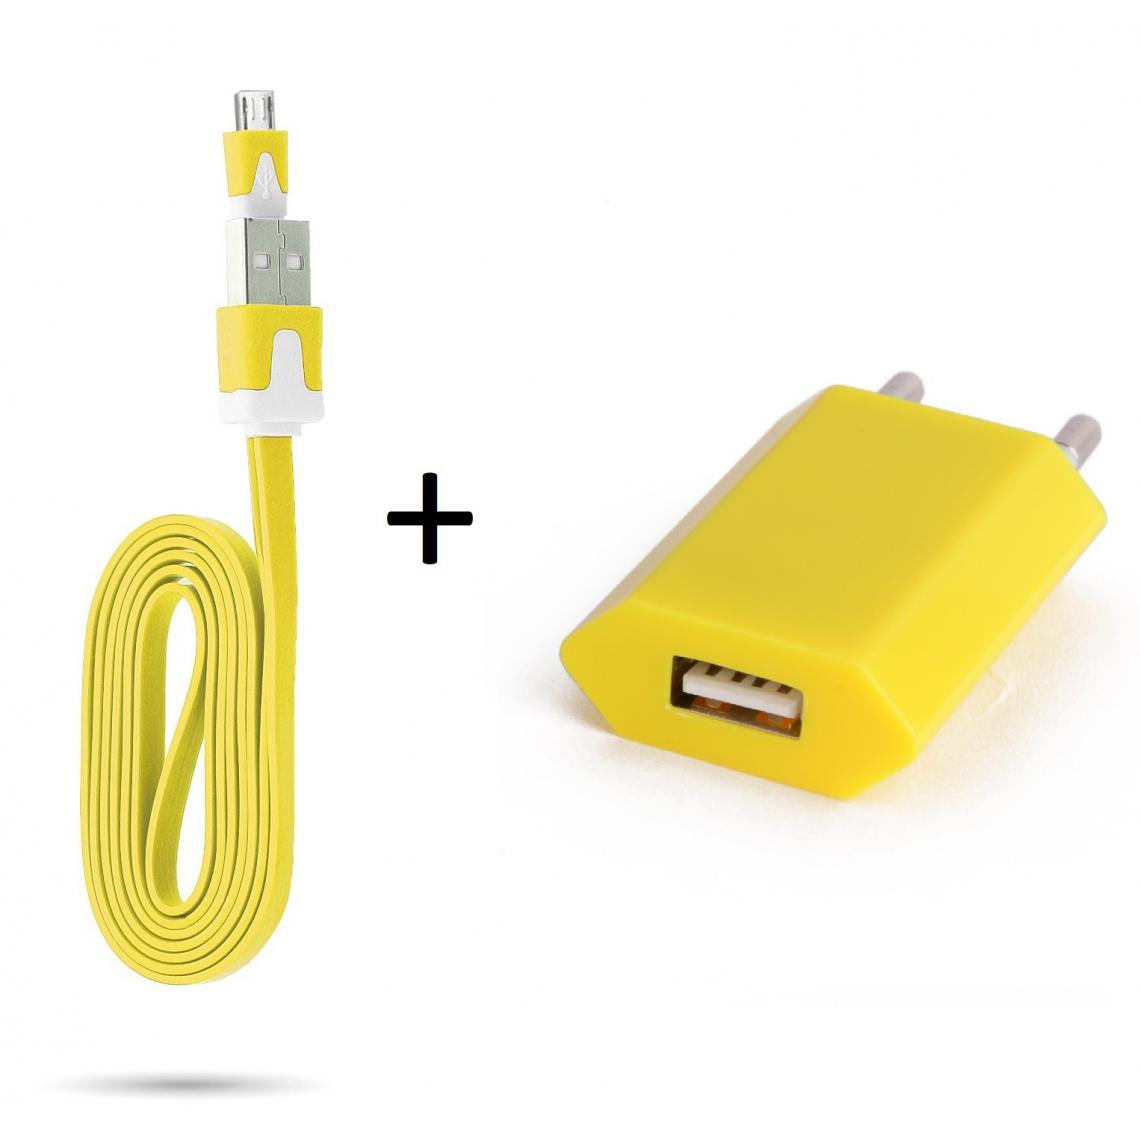 Shot - Cable Noodle 1m Chargeur + Prise Secteur pour "WIKO Y81" Smartphone Micro USB Murale Pack Android (JAUNE) - Chargeur secteur téléphone